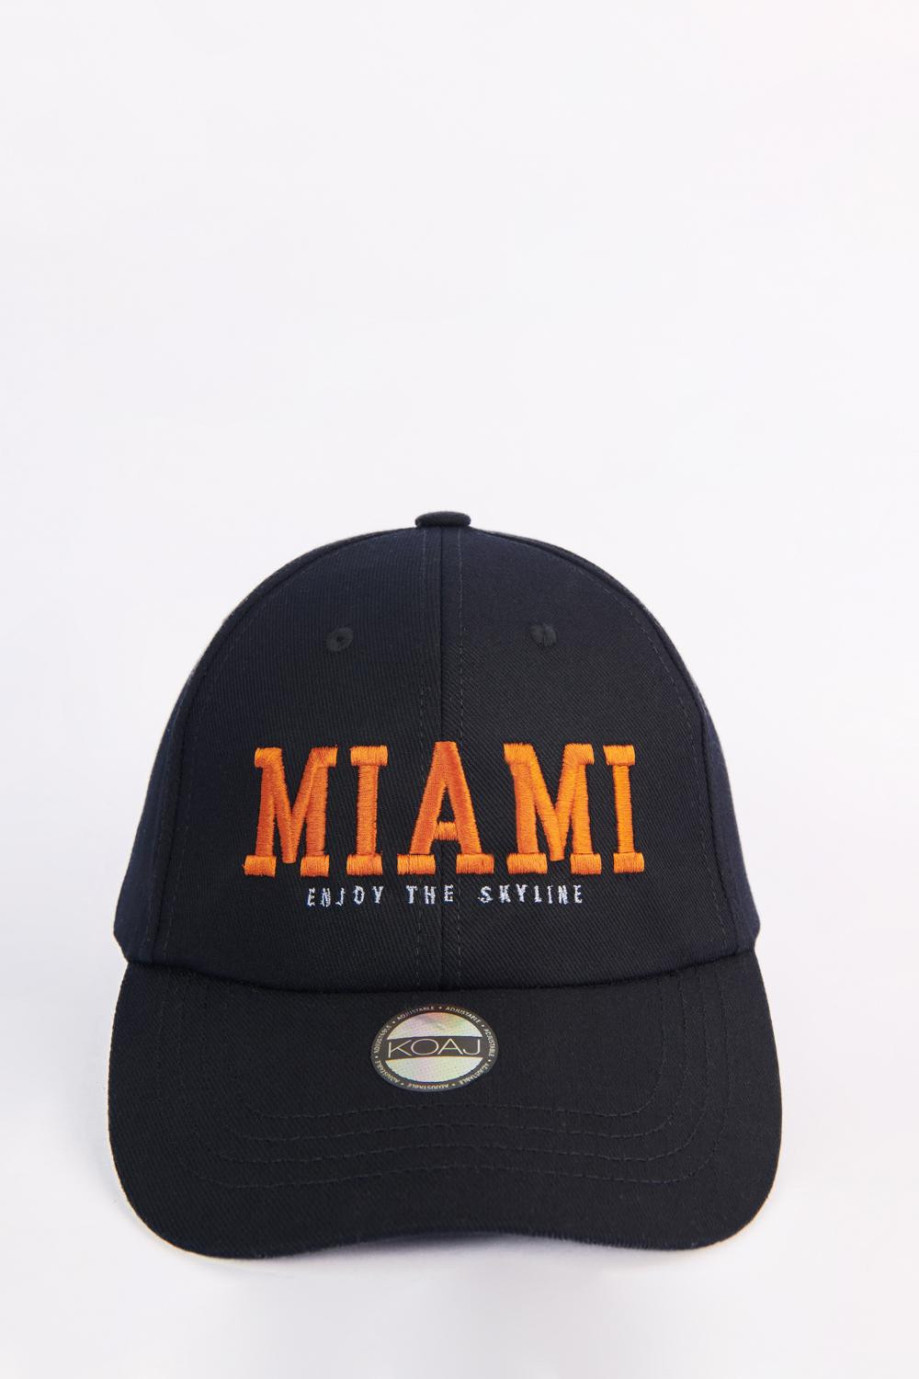 Cachucha negra beisbolera con bordado college de Miami